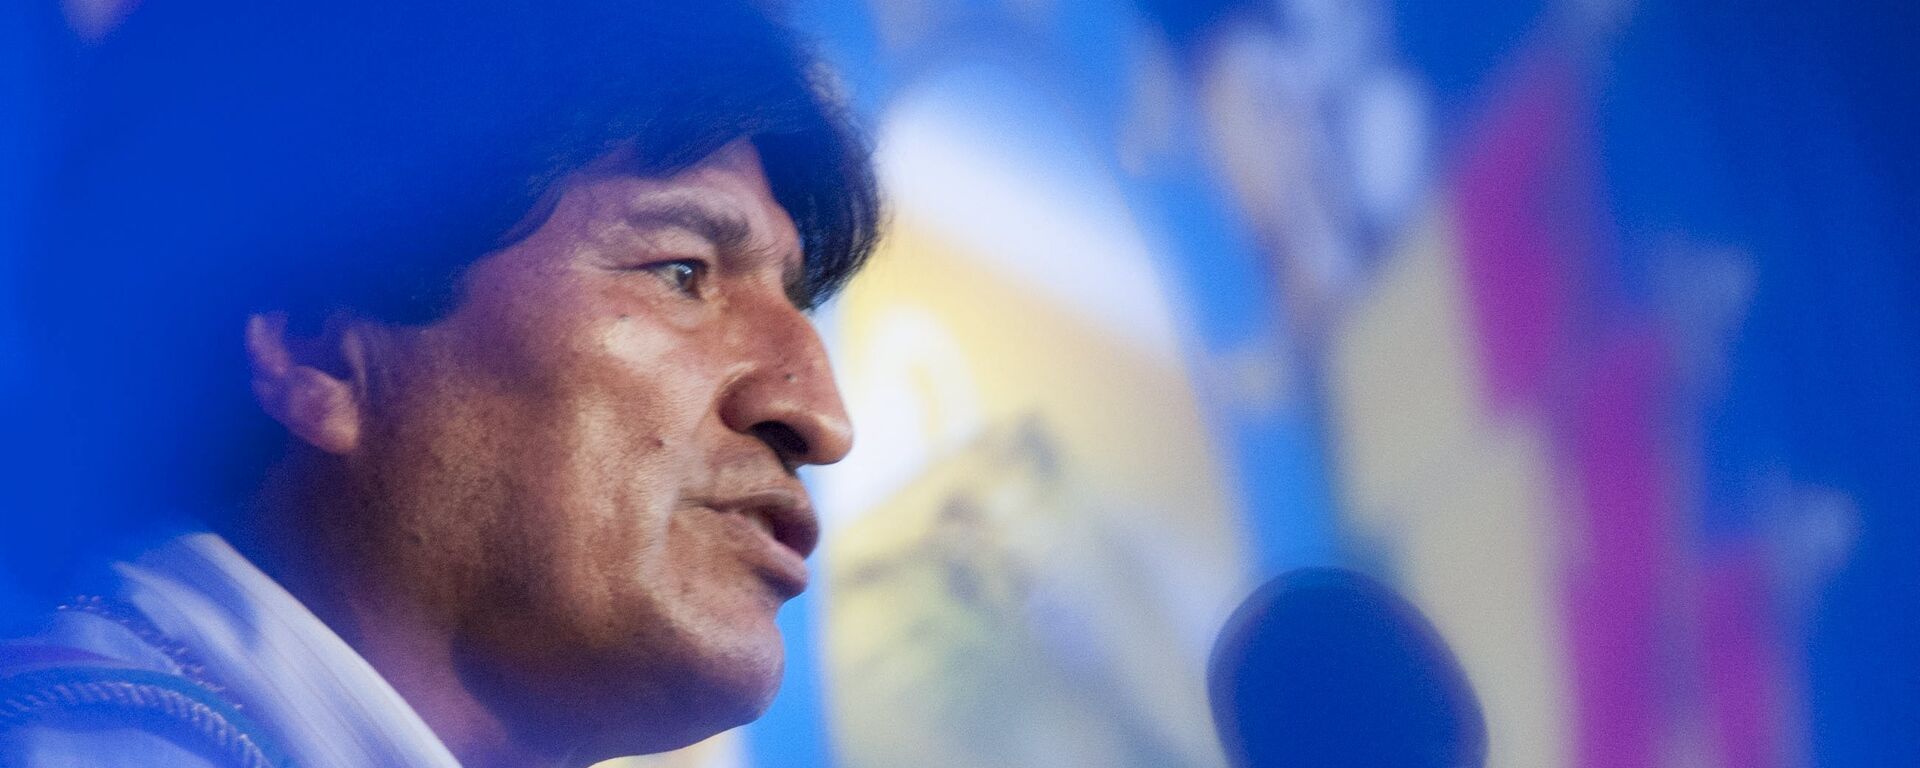 Evo Morales, expresidente de Bolivia - Sputnik Mundo, 1920, 08.03.2021